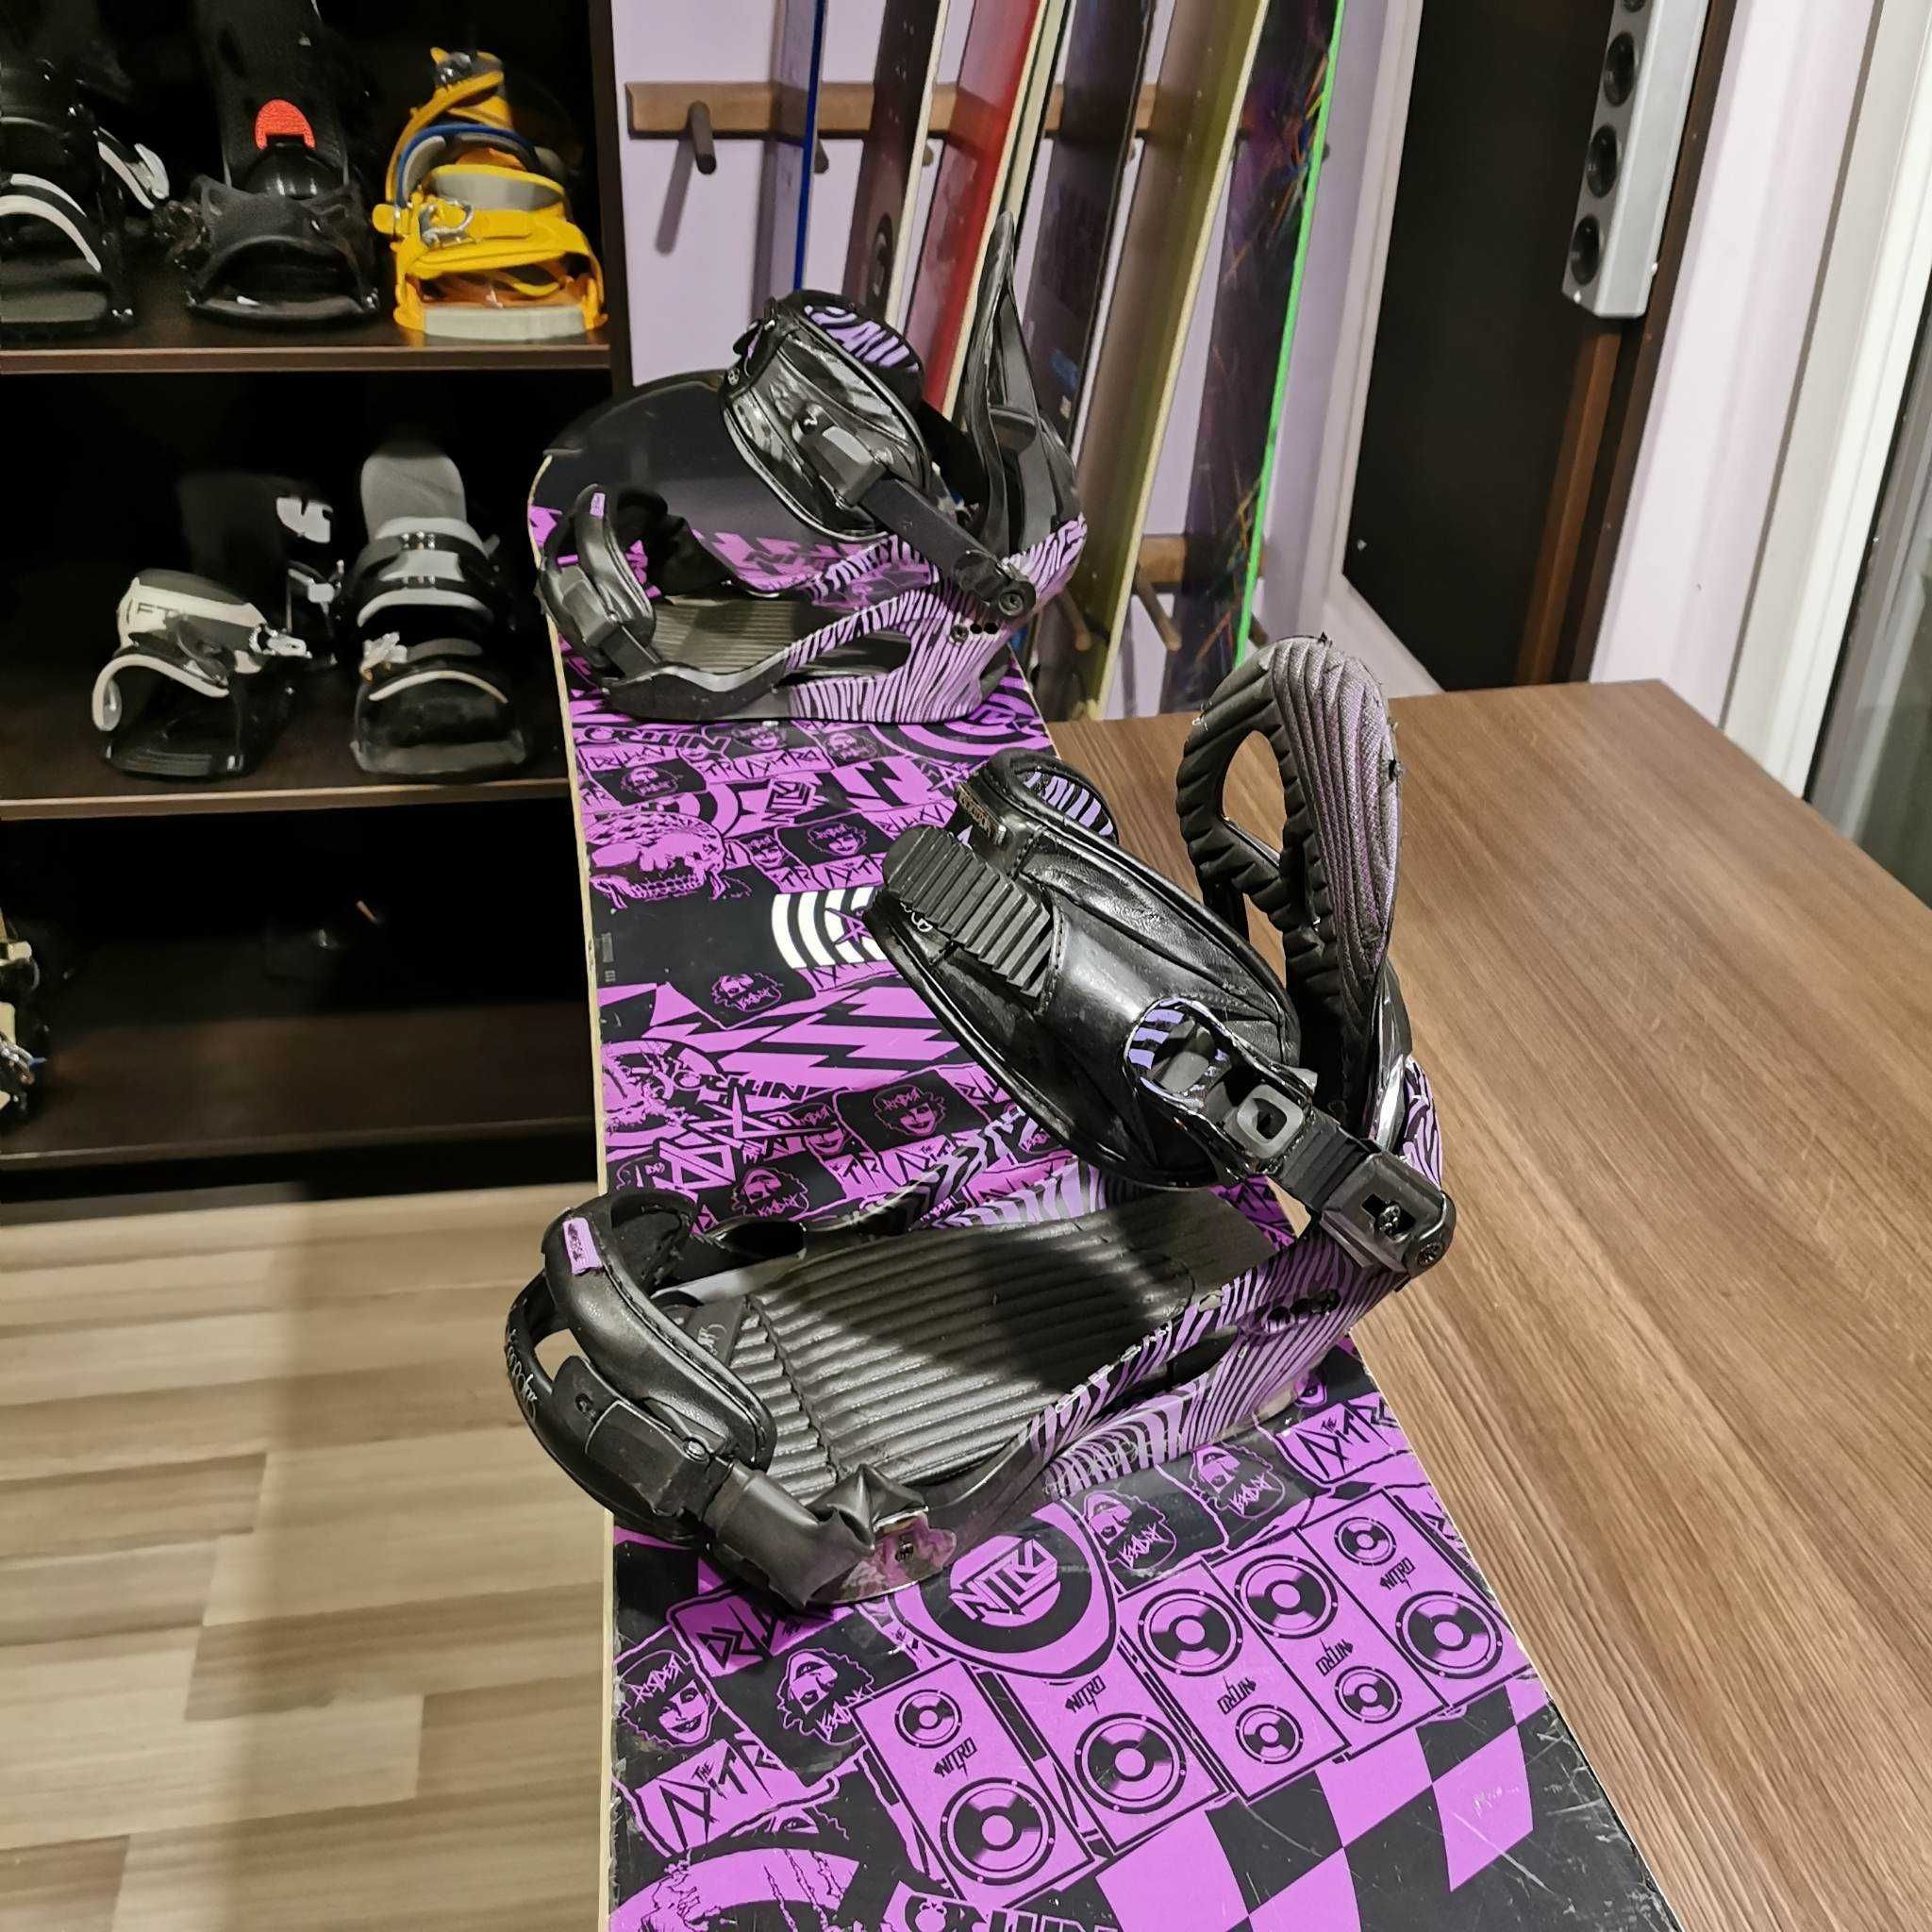 Placa snowboard Nitro Ripper 149 cu legaturi K2 marime M